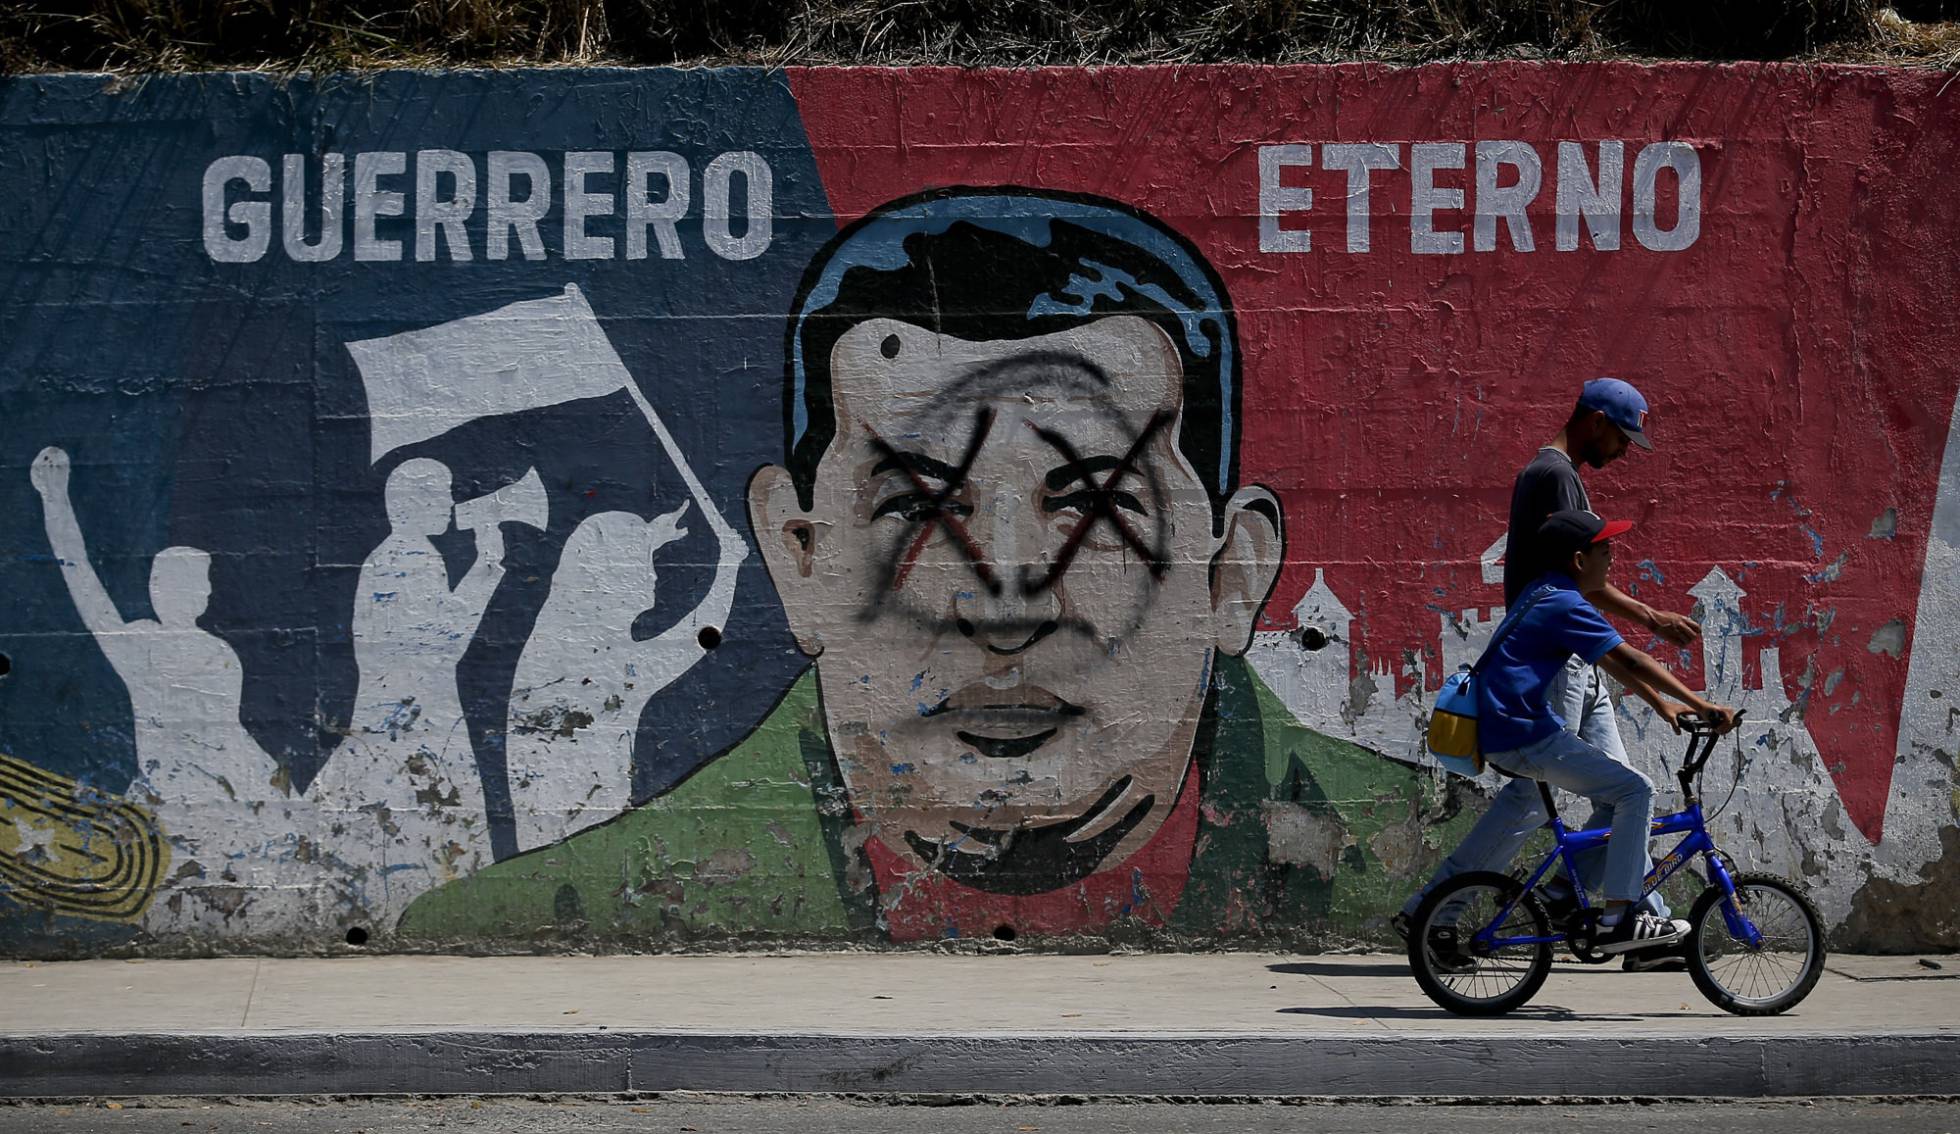 La ONU envía un equipo a Venezuela para investigar crímenes de derechos humanos